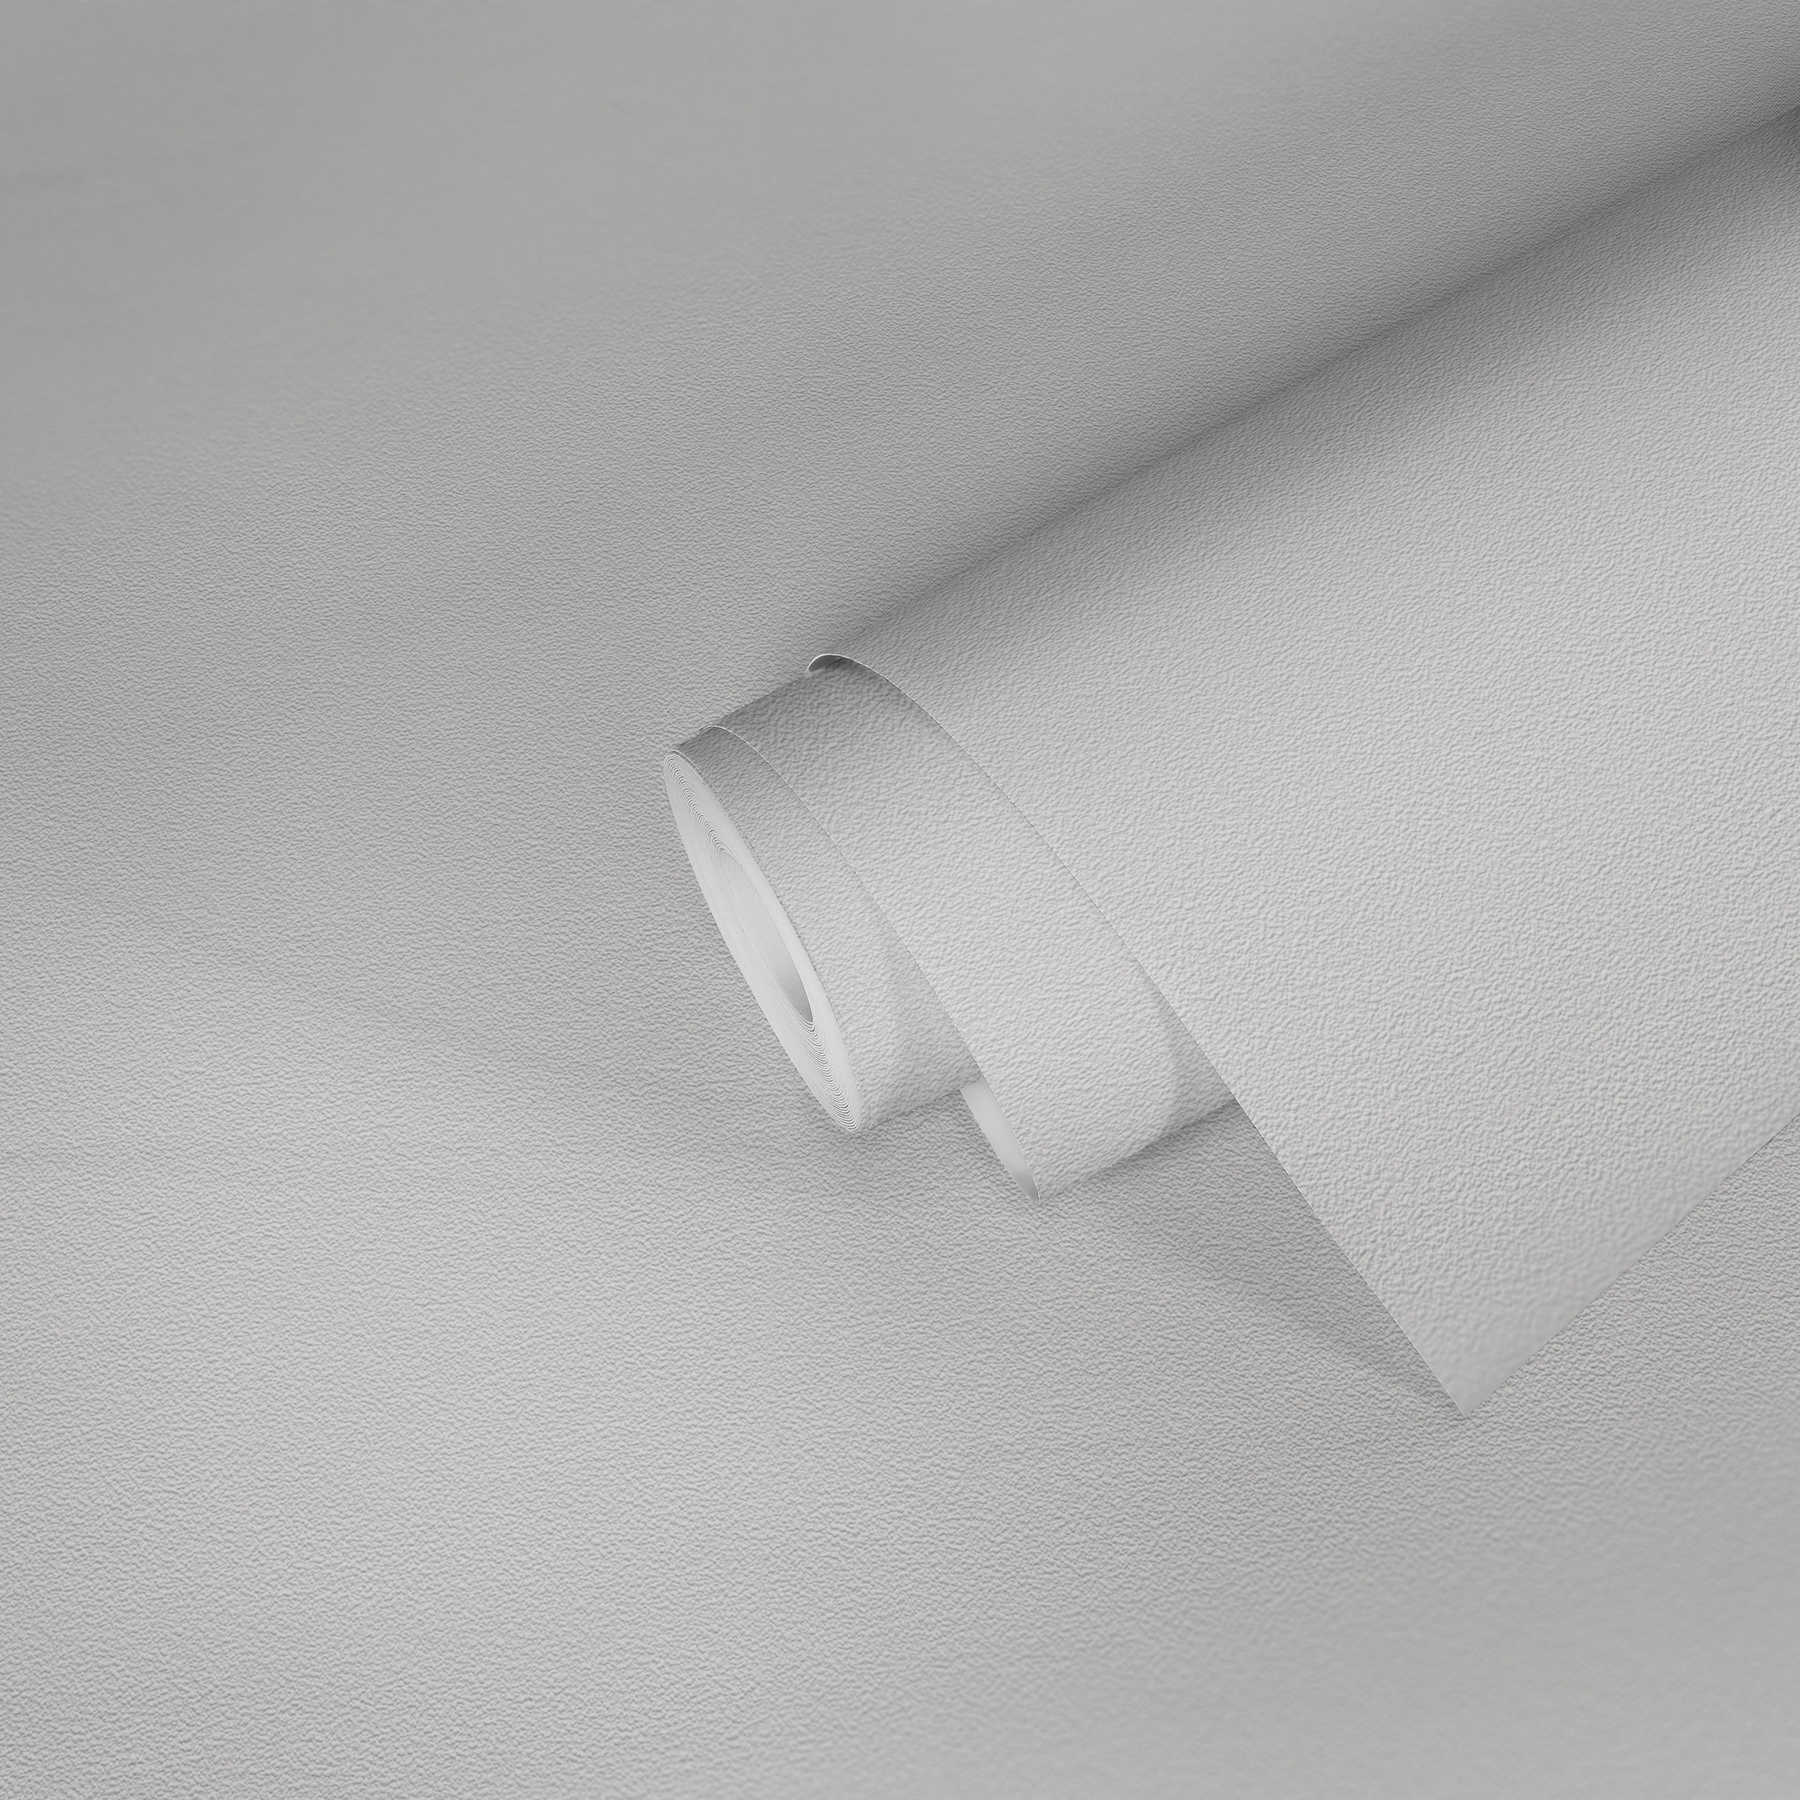             Wit behang met structuuroppervlak in fijne gipslook
        